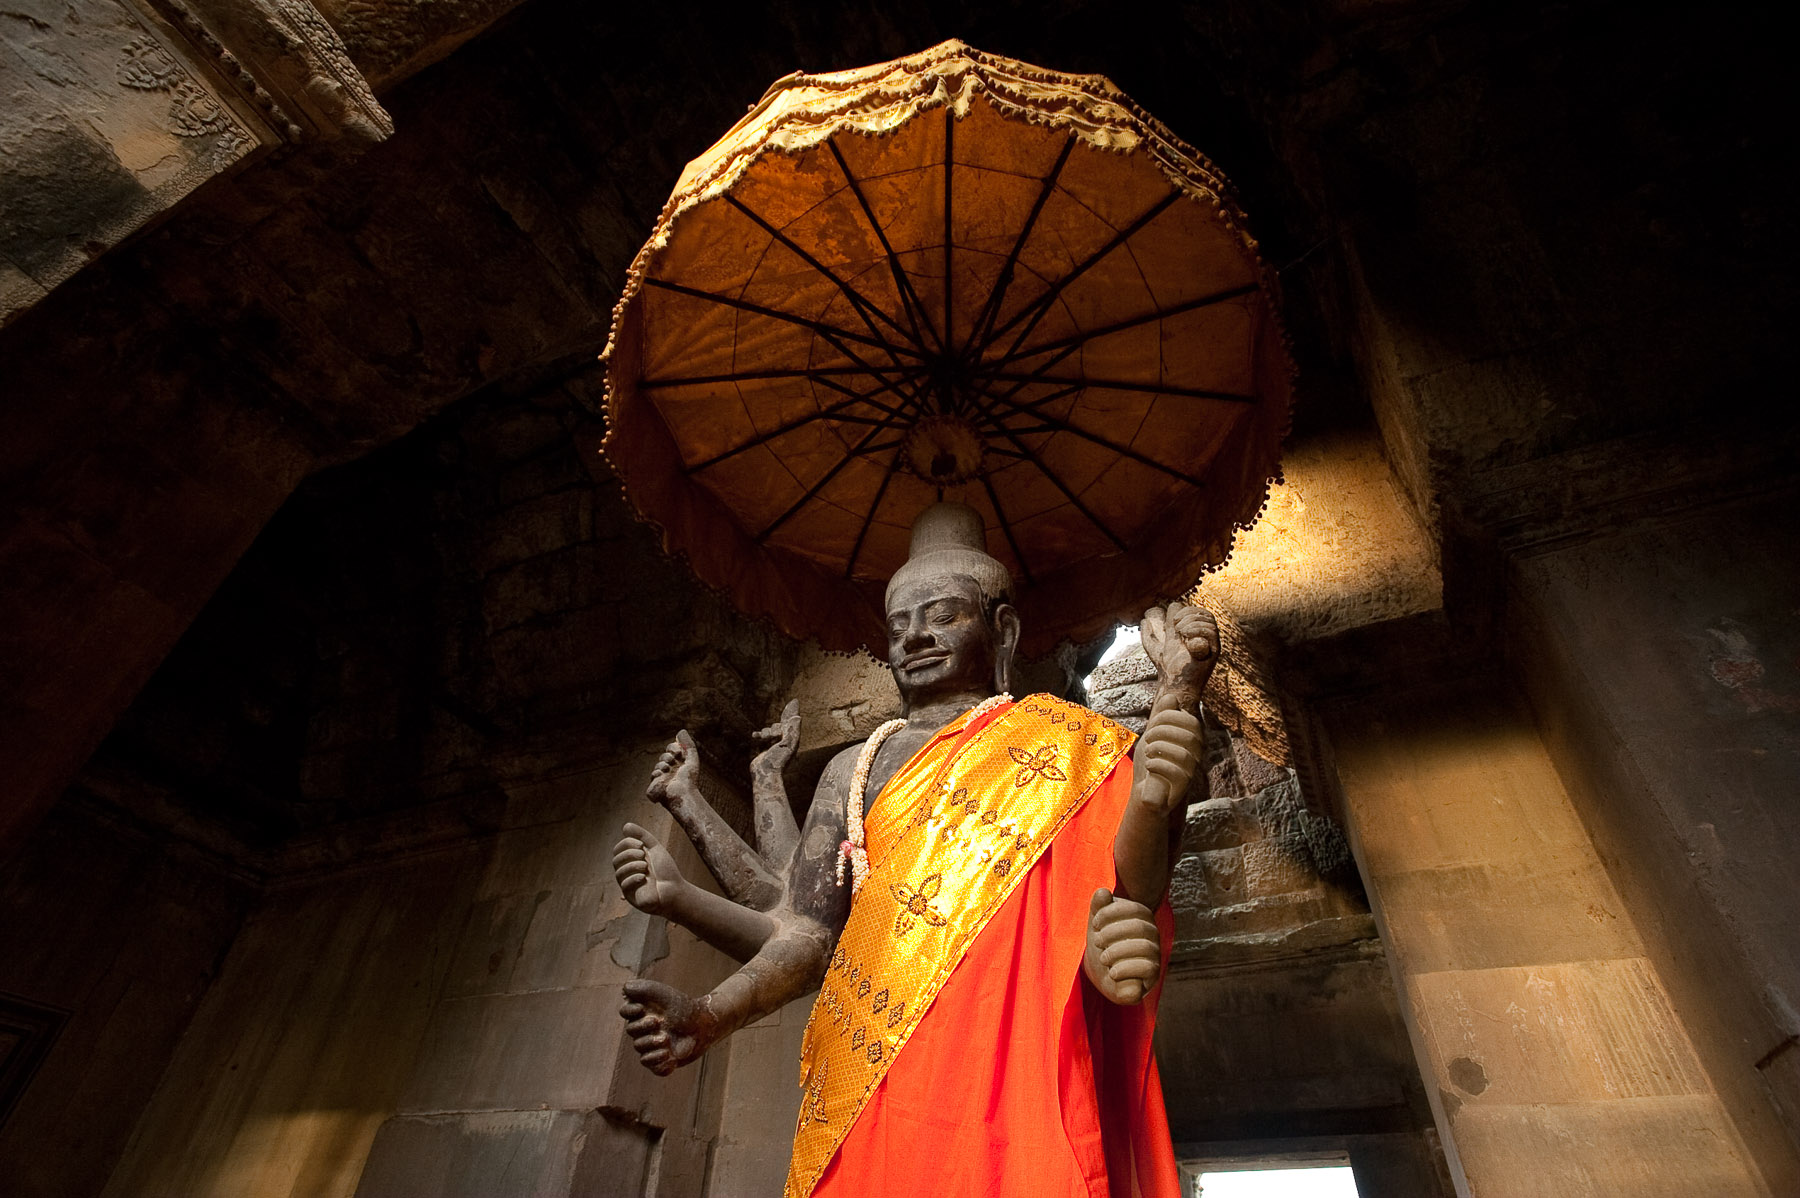 Vishnu statue in Ankor Wat, Siem Reap Cambodia